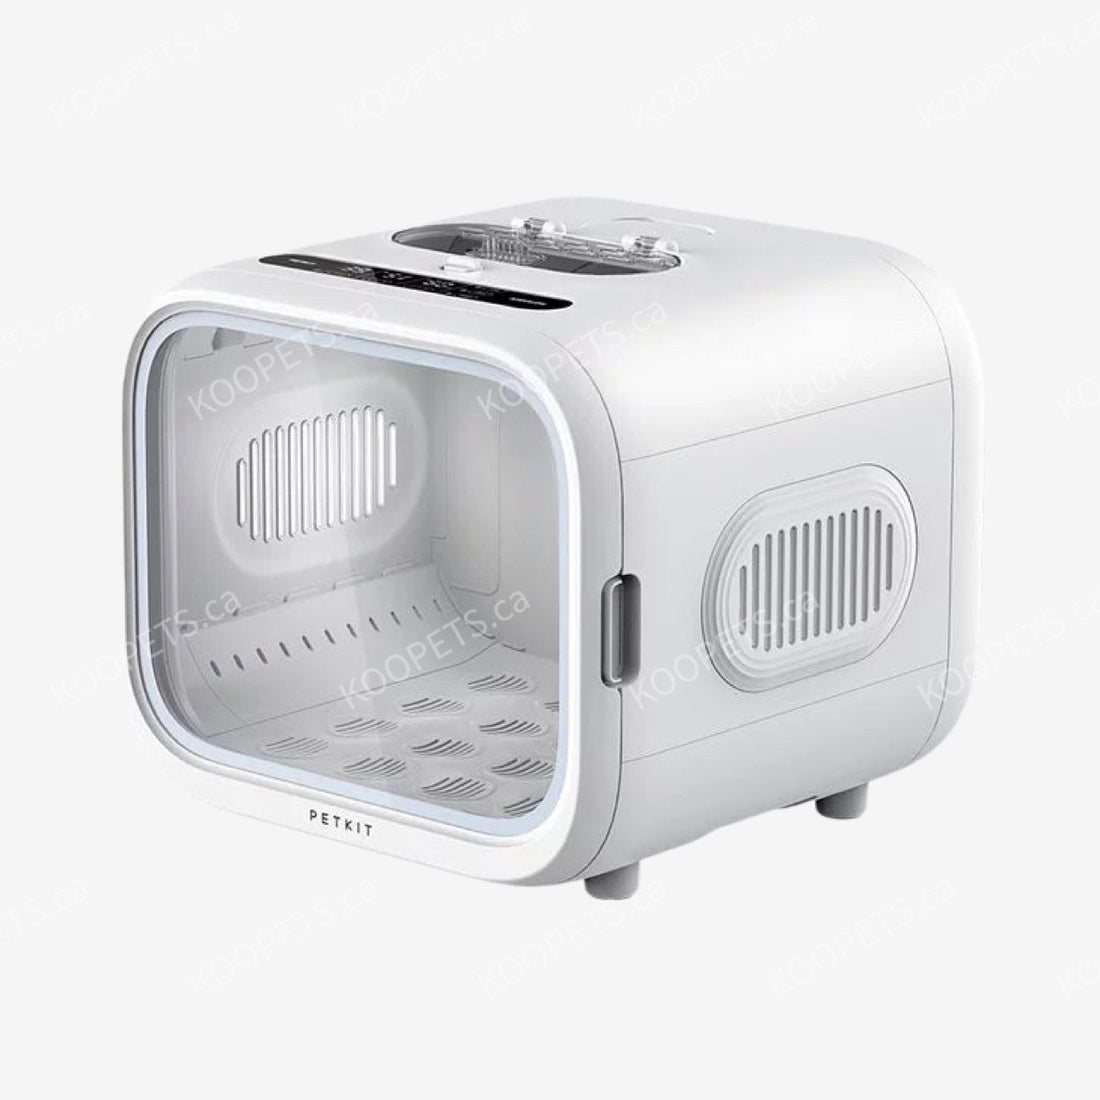 PETKIT | Automatic Pet Drying Box - AirSalon Max